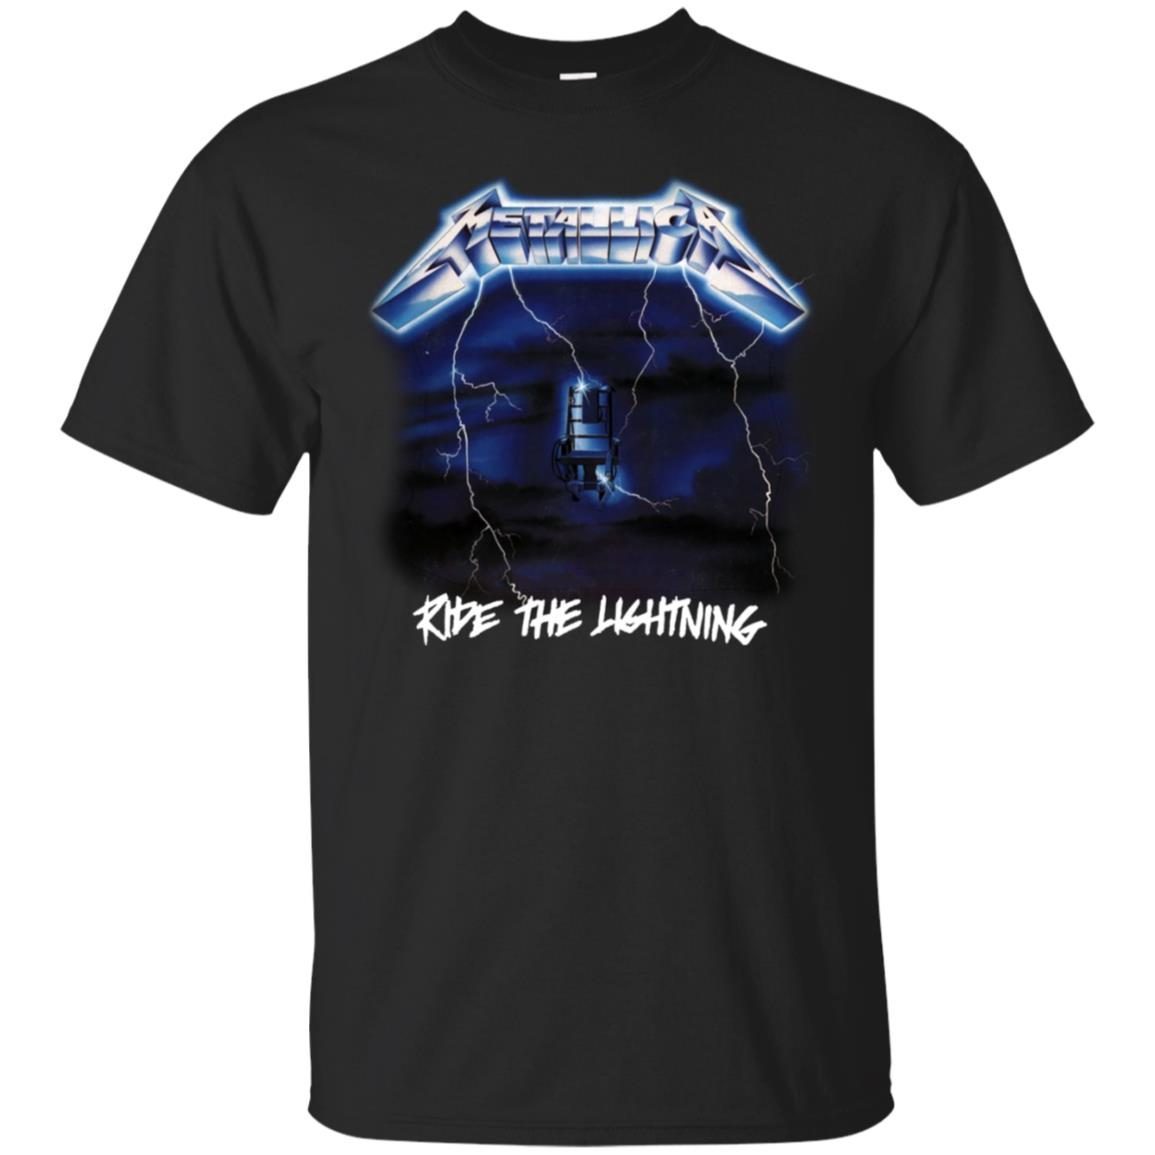 metallica ride the lightning t shirt